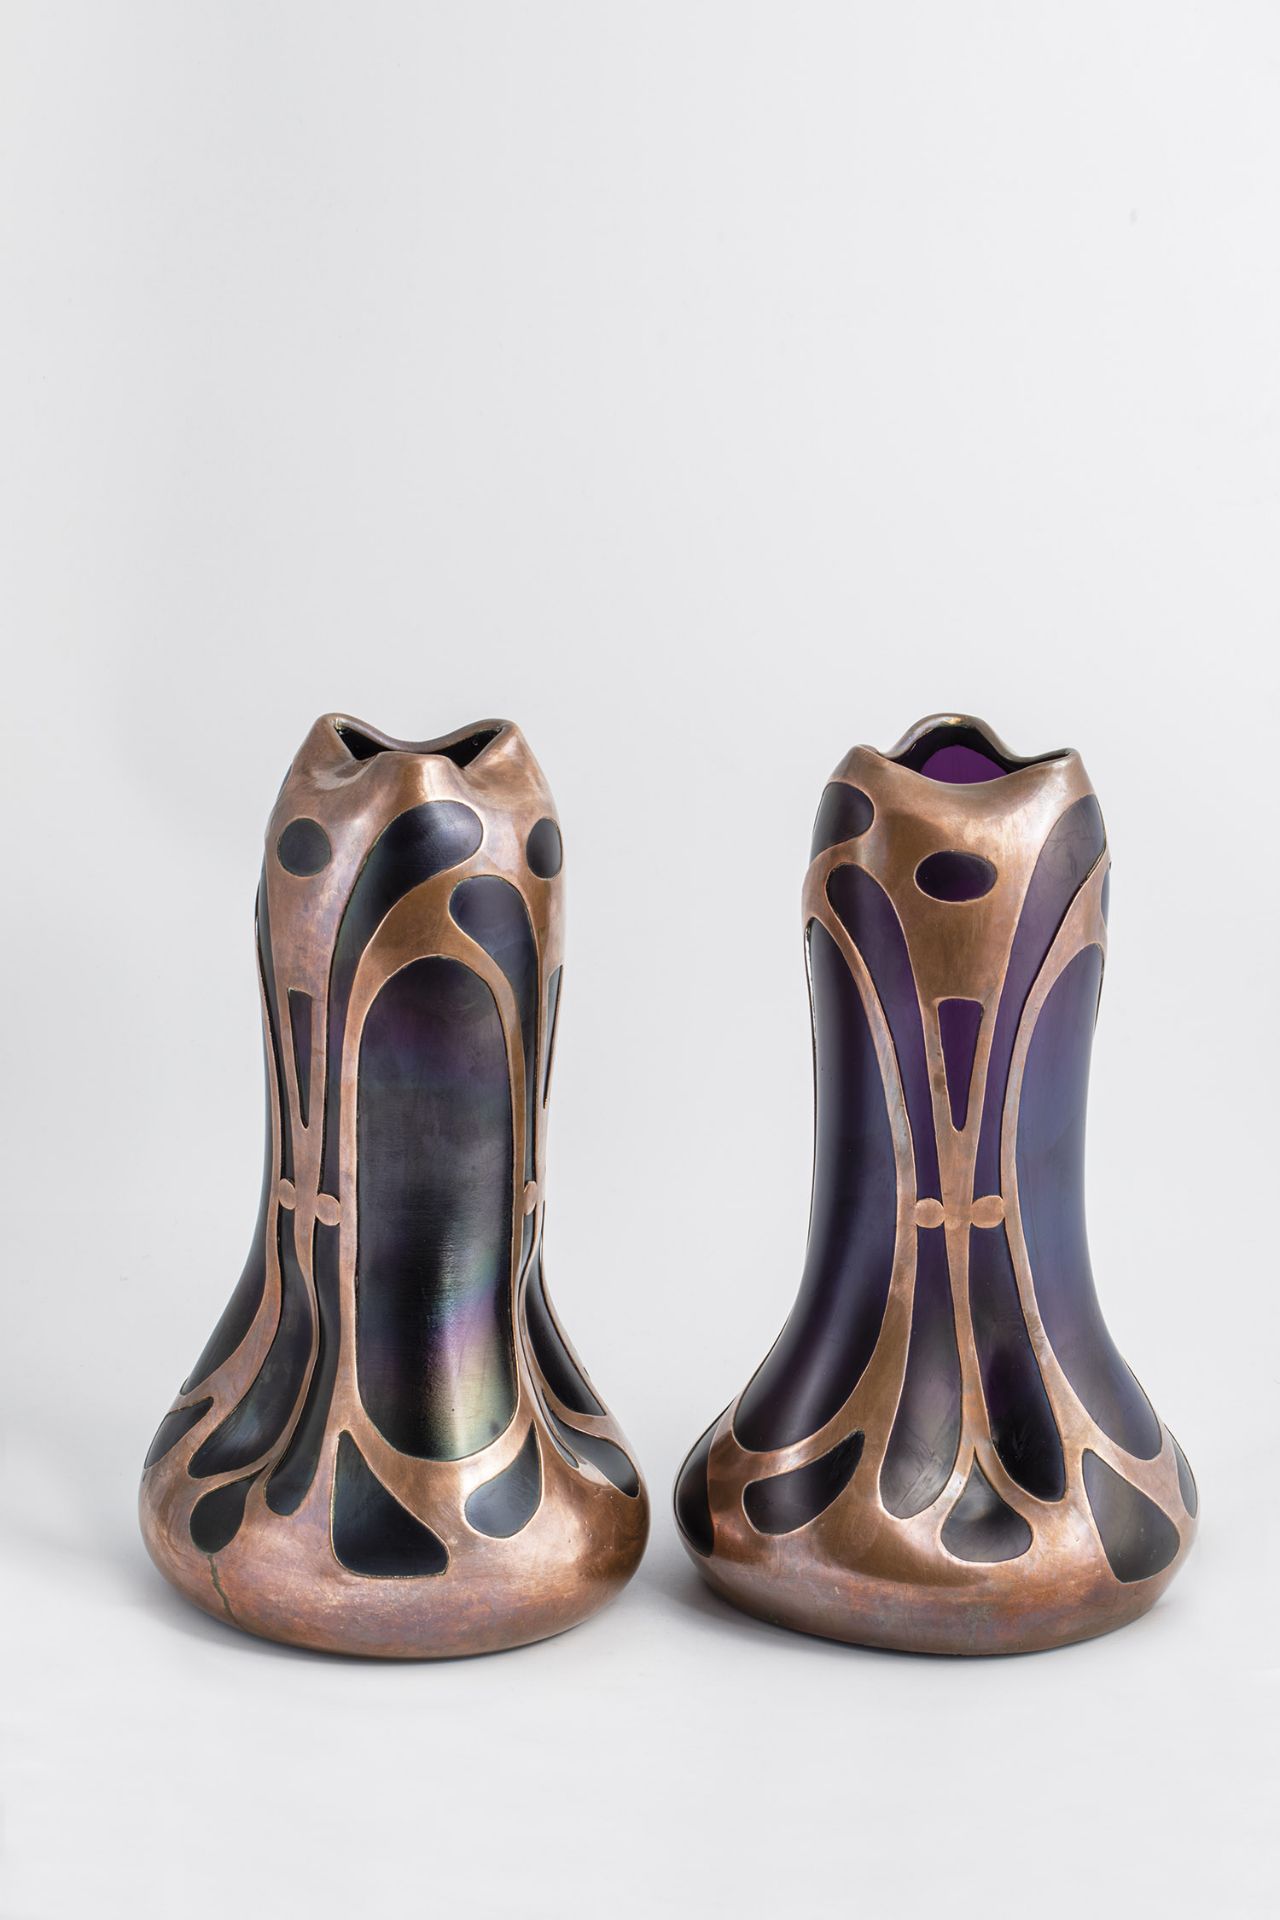 Paar Vasen mit galvanoplastischem Kupferdekor